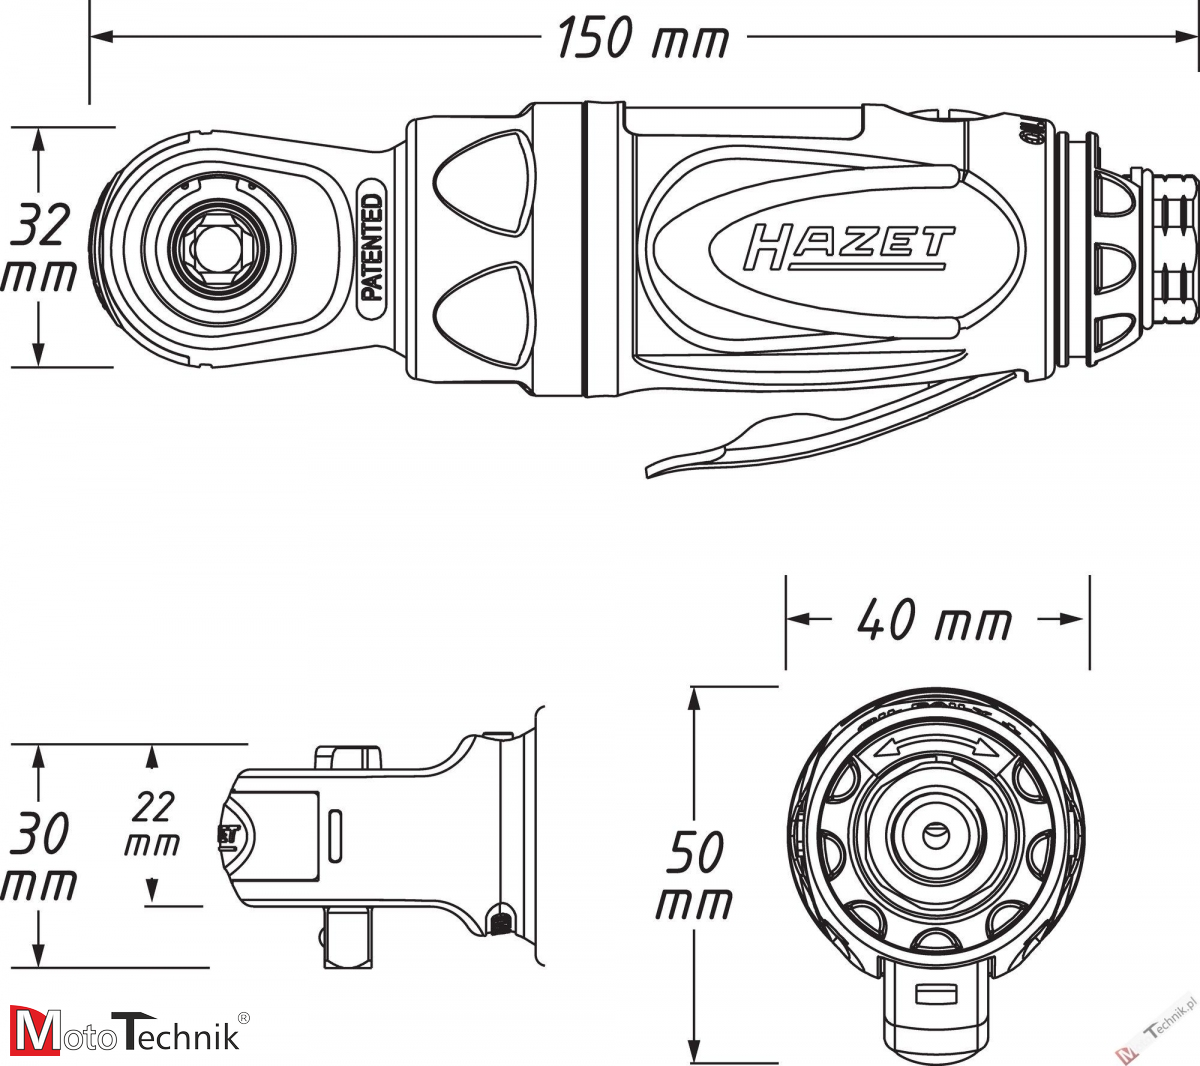 Miniwkrętarka grzechotkowa HAZET 9020P-2 (40 Nm)